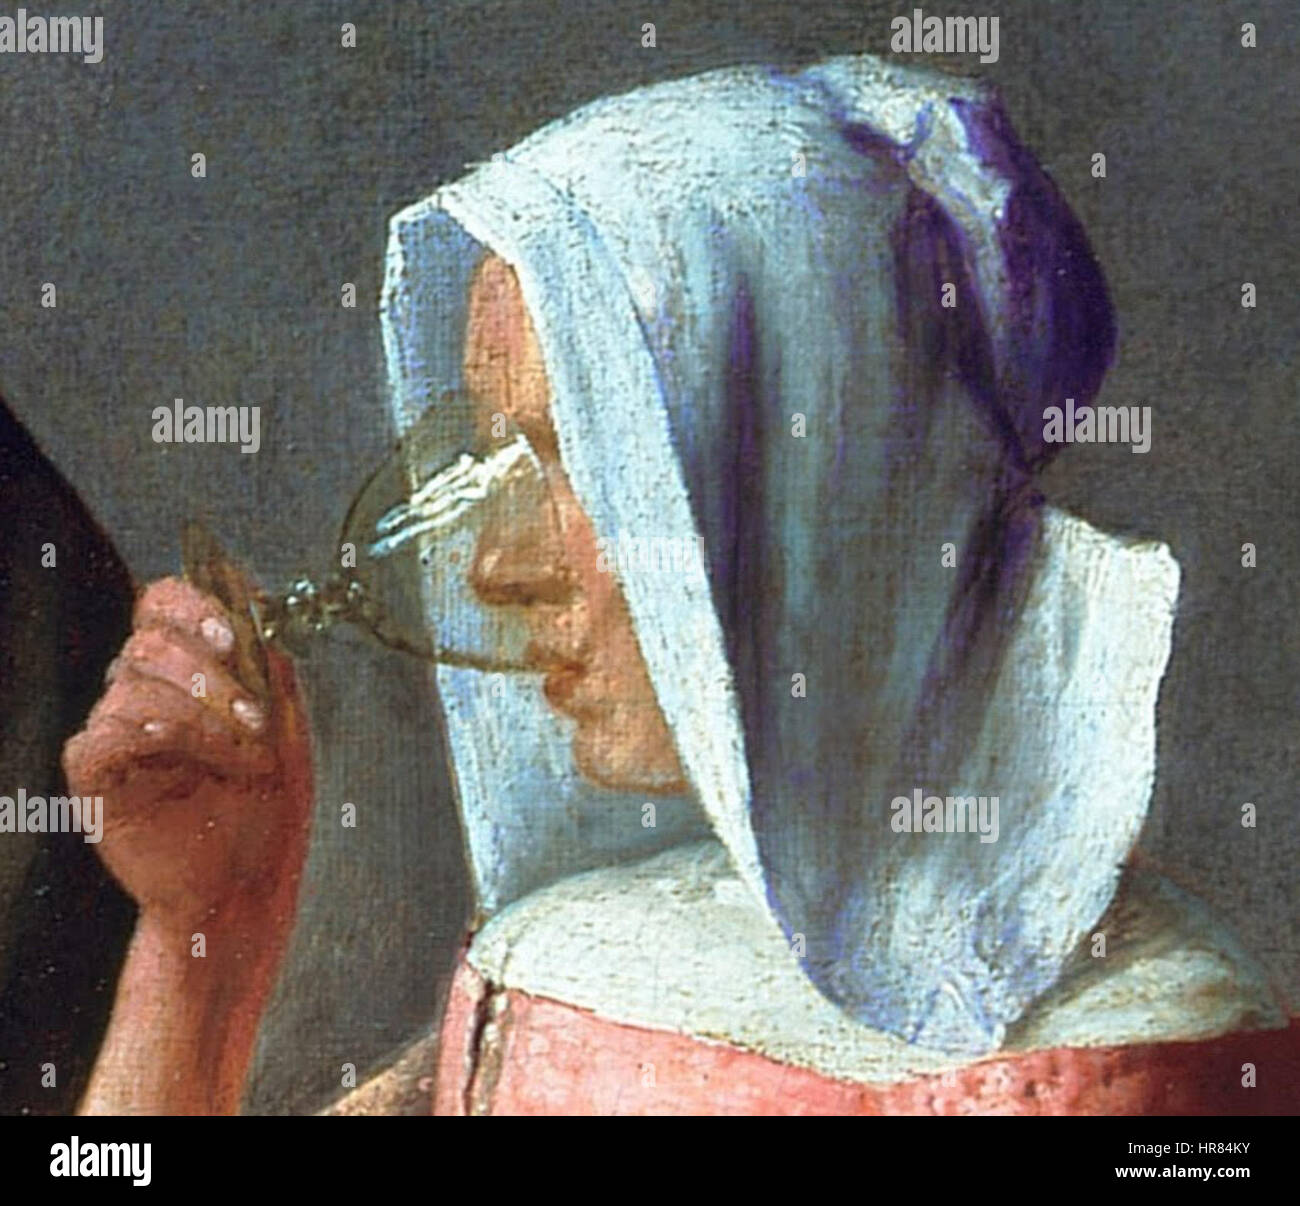 Vermeer Le verre de vin dettaglio de la femme buvant Foto Stock